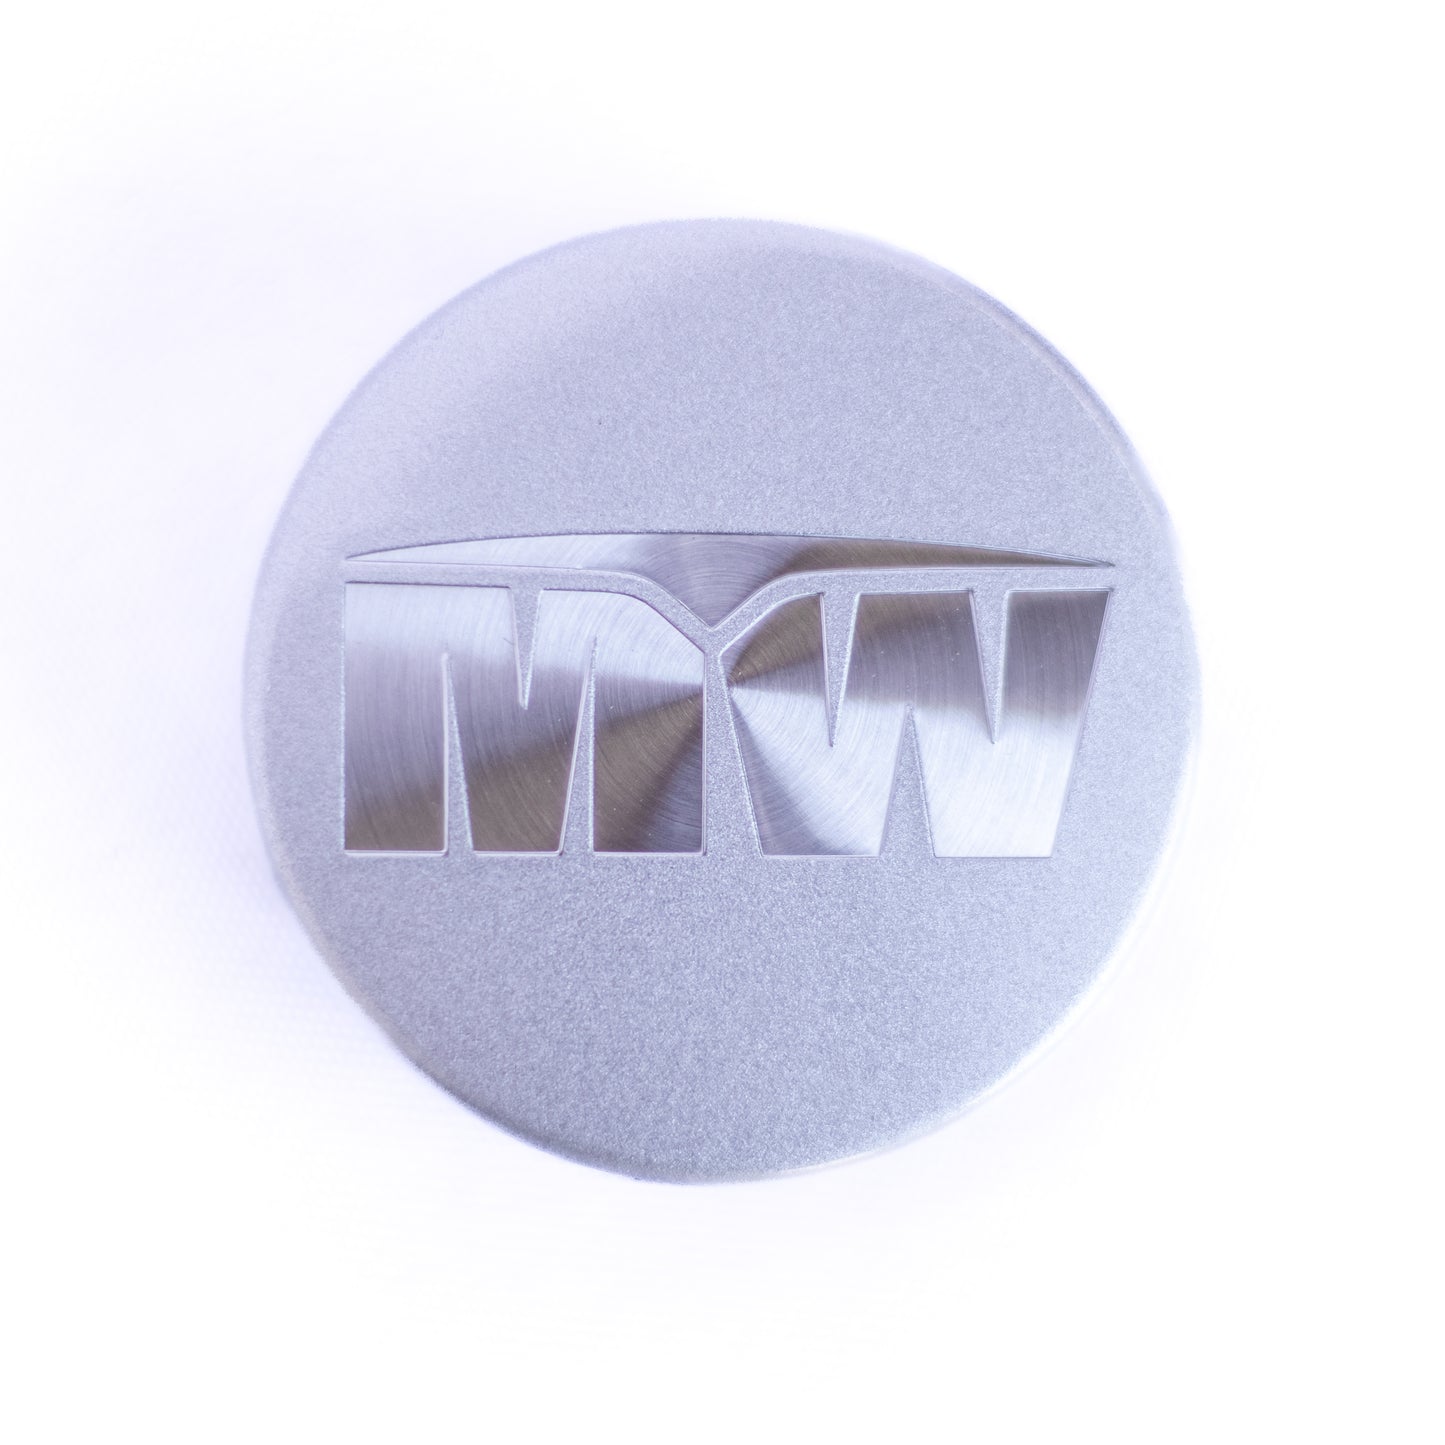 Tapa central: logotipo MW de aluminio cepillado (única)